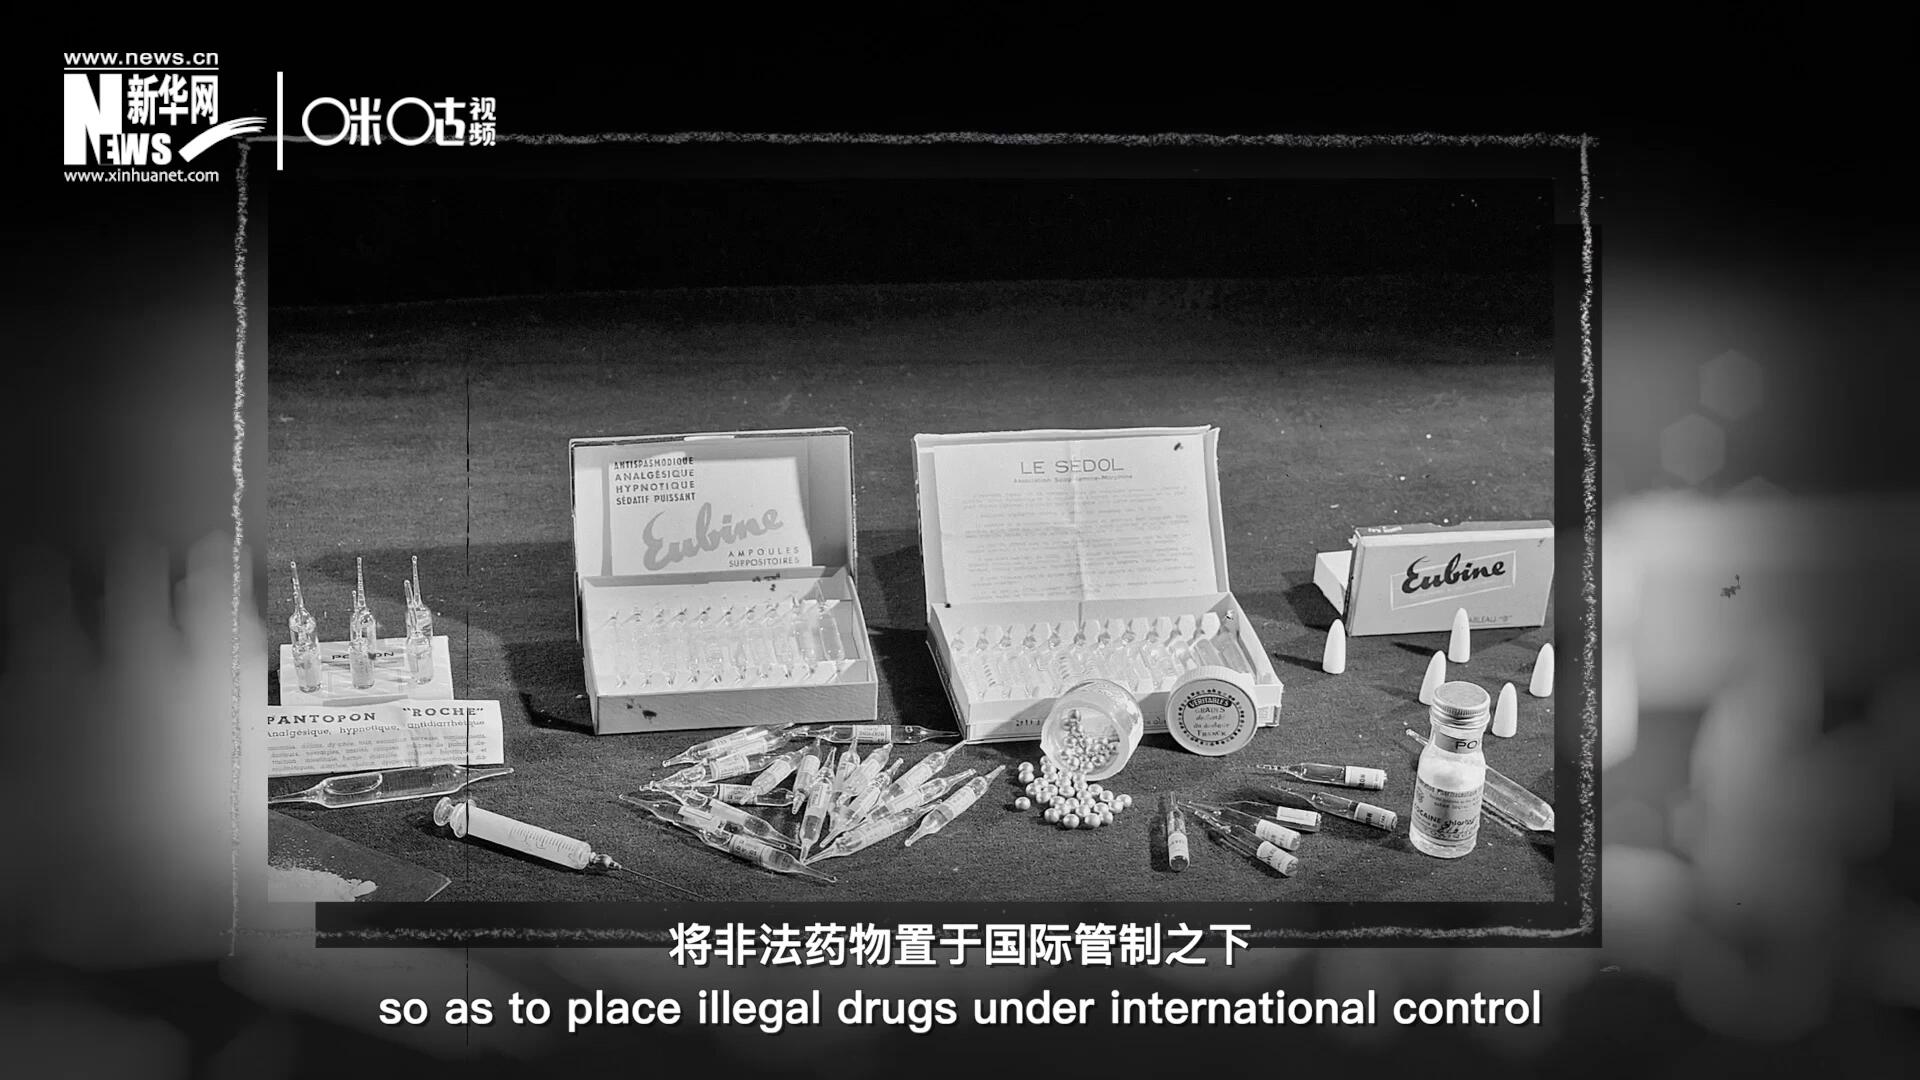 1946年 ，联合国签订了关于麻醉品管制的议定书，成立了麻醉药品委员会，将非法药物置于国际管制之下。